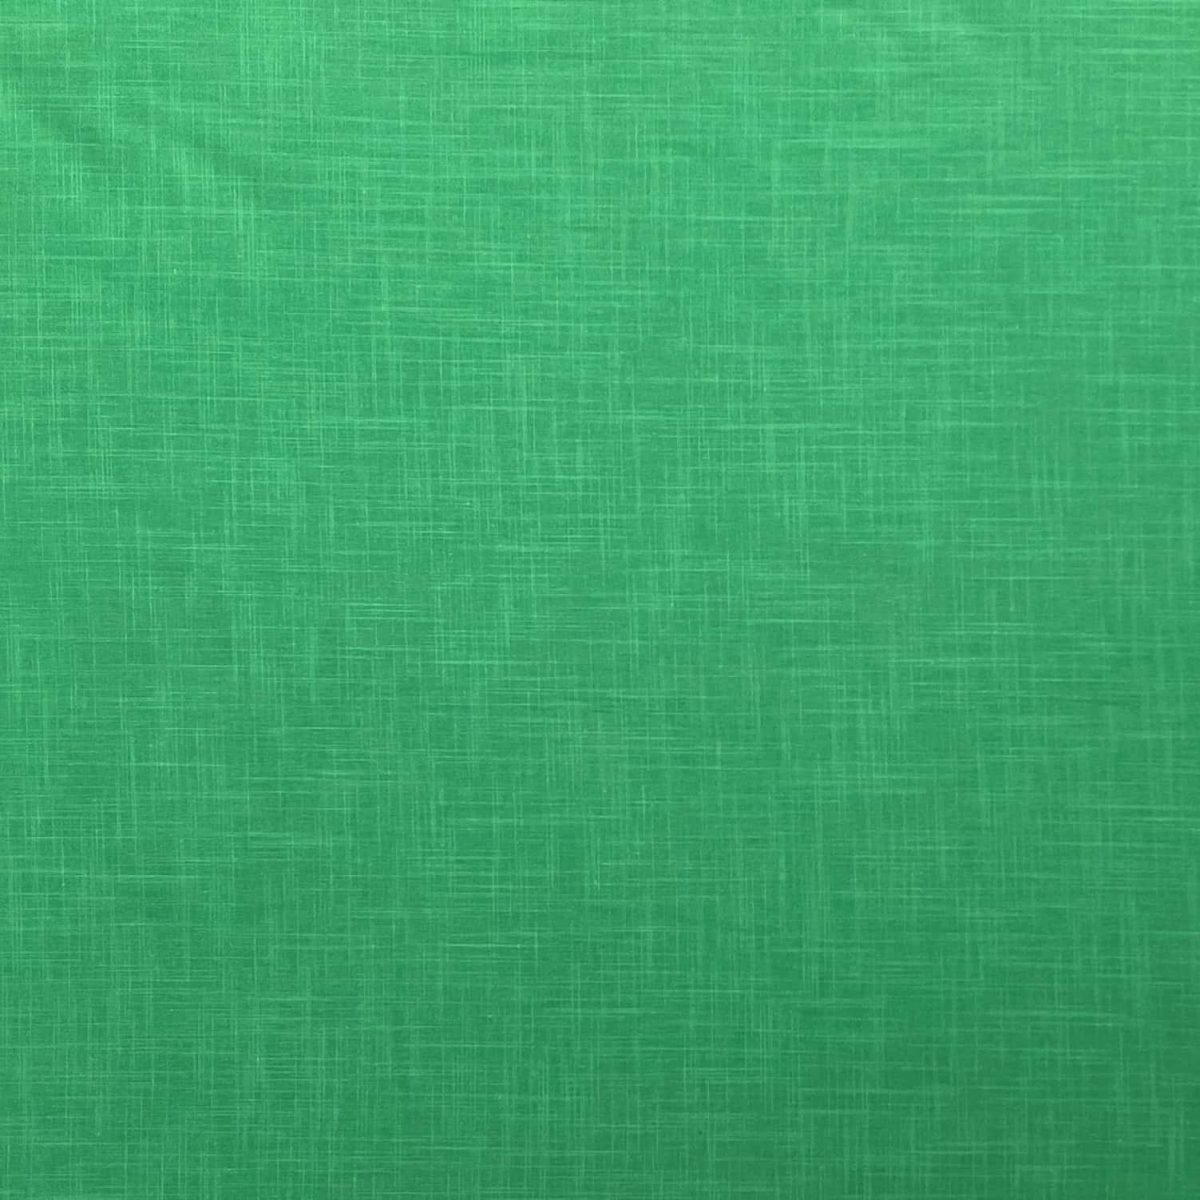 birlik1952 şantuklu pamuk keten flamlı şantuk elbiselik gömleklik kumaş shantung linen cotton shirt whosale denizli fabric yeşil green